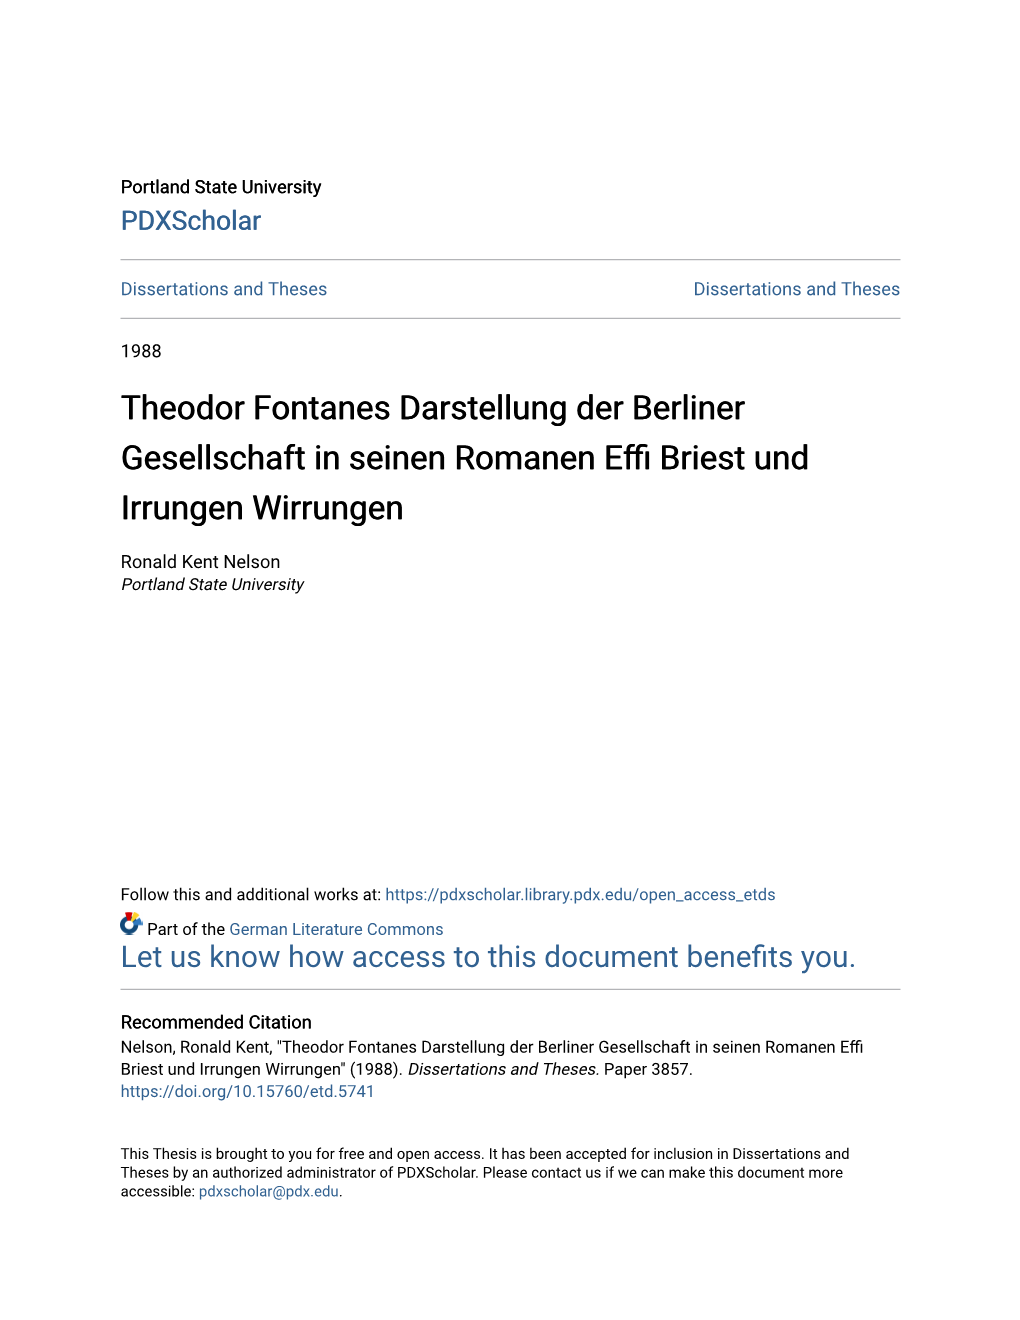 Theodor Fontanes Darstellung Der Berliner Gesellschaft in Seinen Romanen Effi Briest Und Irrungen Wirrungen